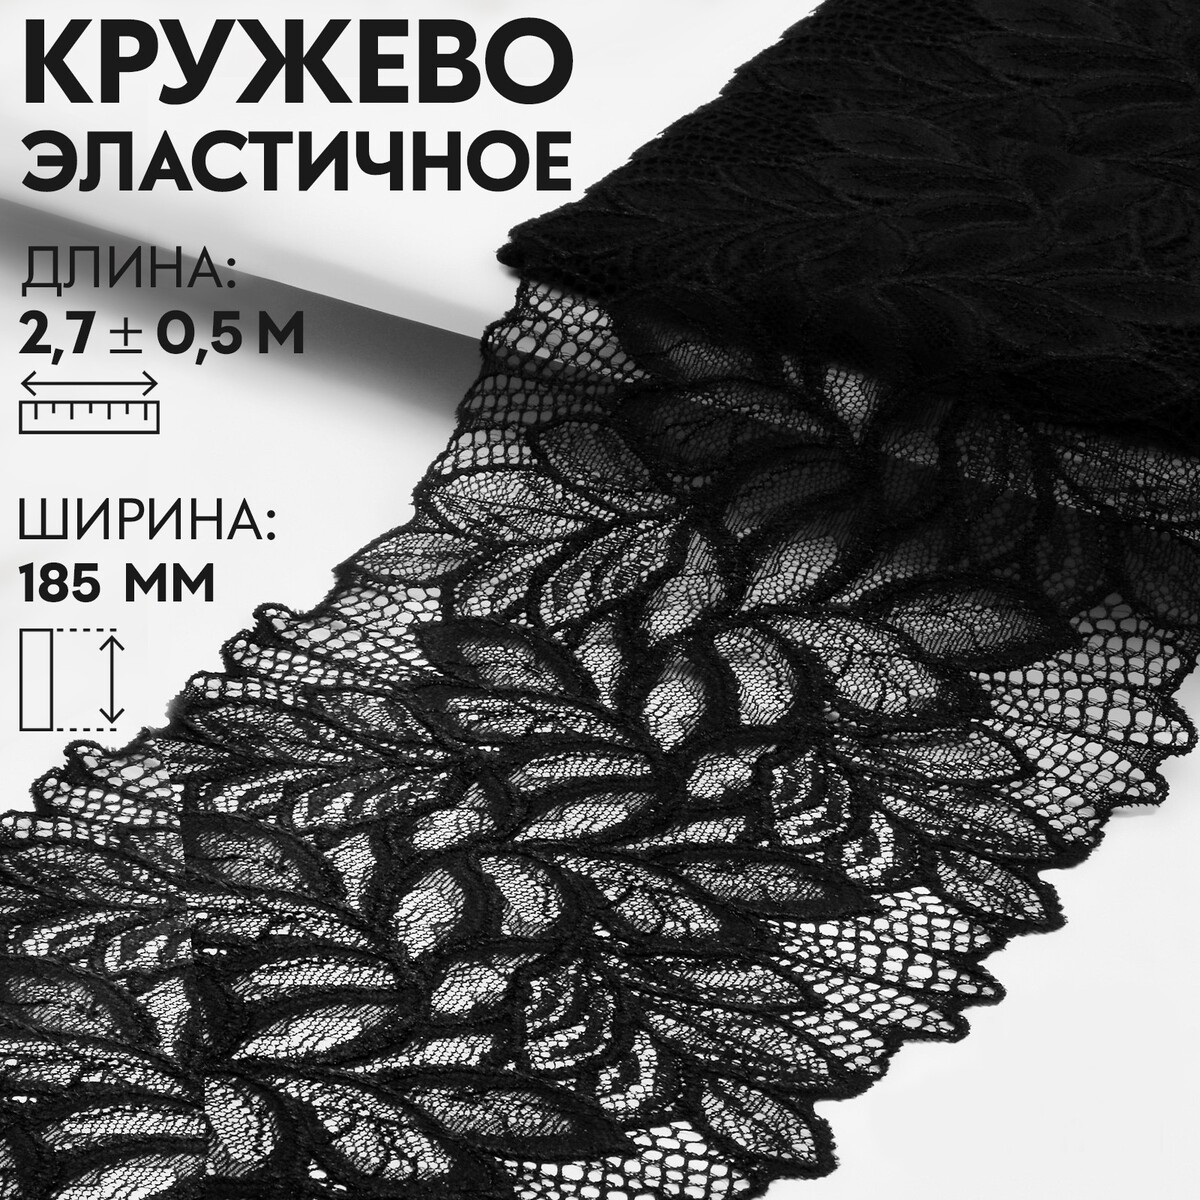 Кружевная эластичная ткань, 185 мм × 2,7 ± 0,5 м, цвет черный